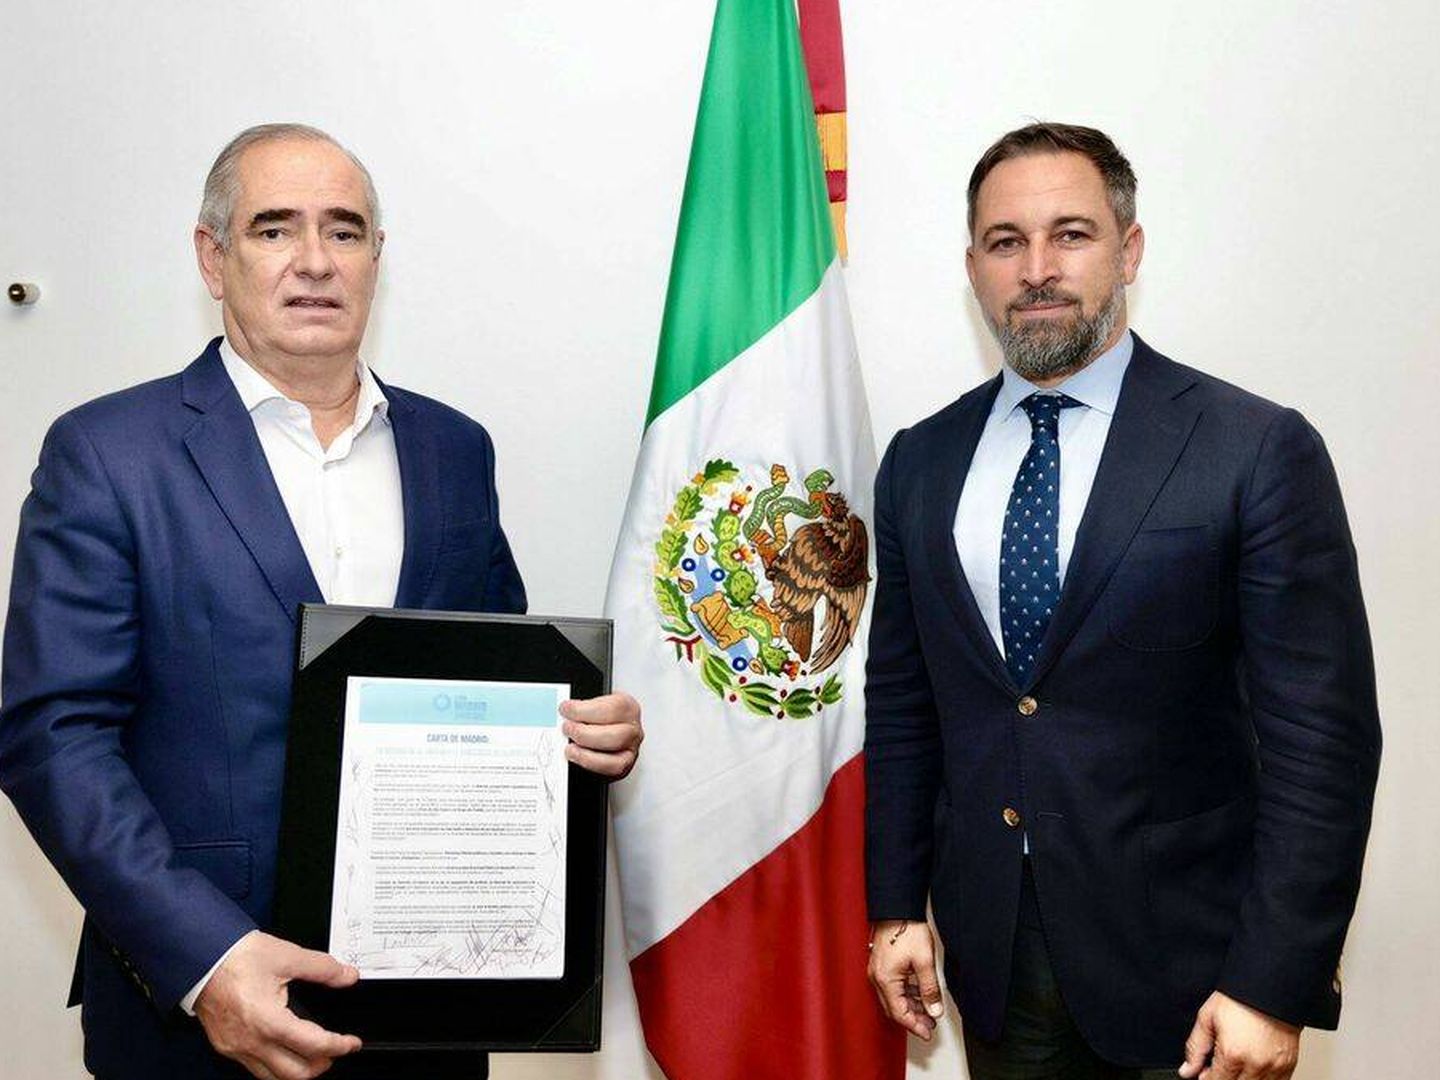 El líder de los senadores del PAN, Julen Rementería, sostiene la Carta de Madrid firmada junto al líder de Vox, Santiago Abascal.